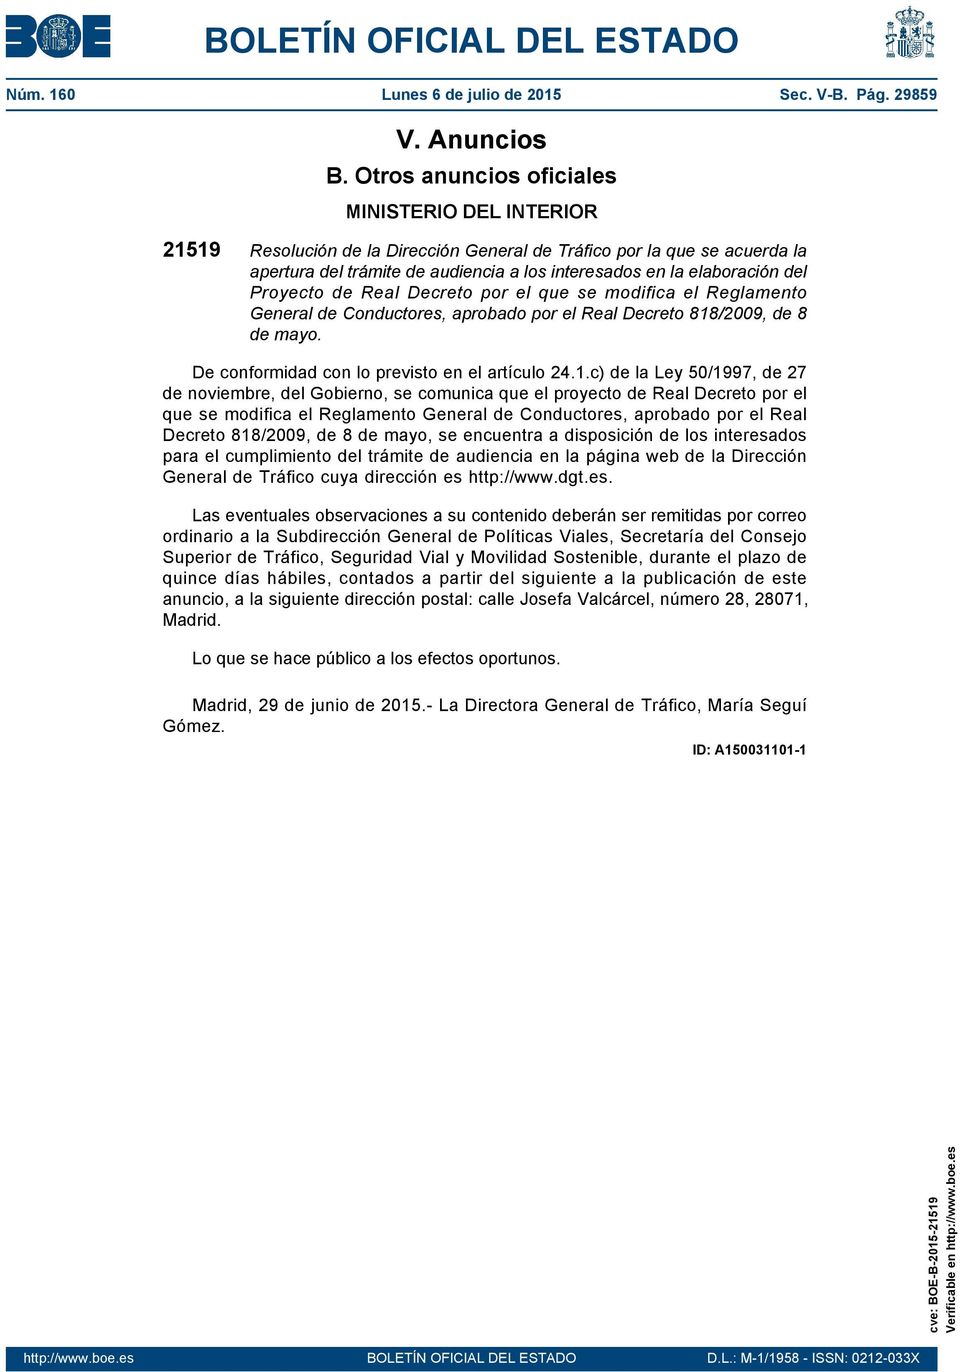 Proyecto de Real Decreto por el que se modifica el Reglamento General de Conductores, aprobado por el Real Decreto 818